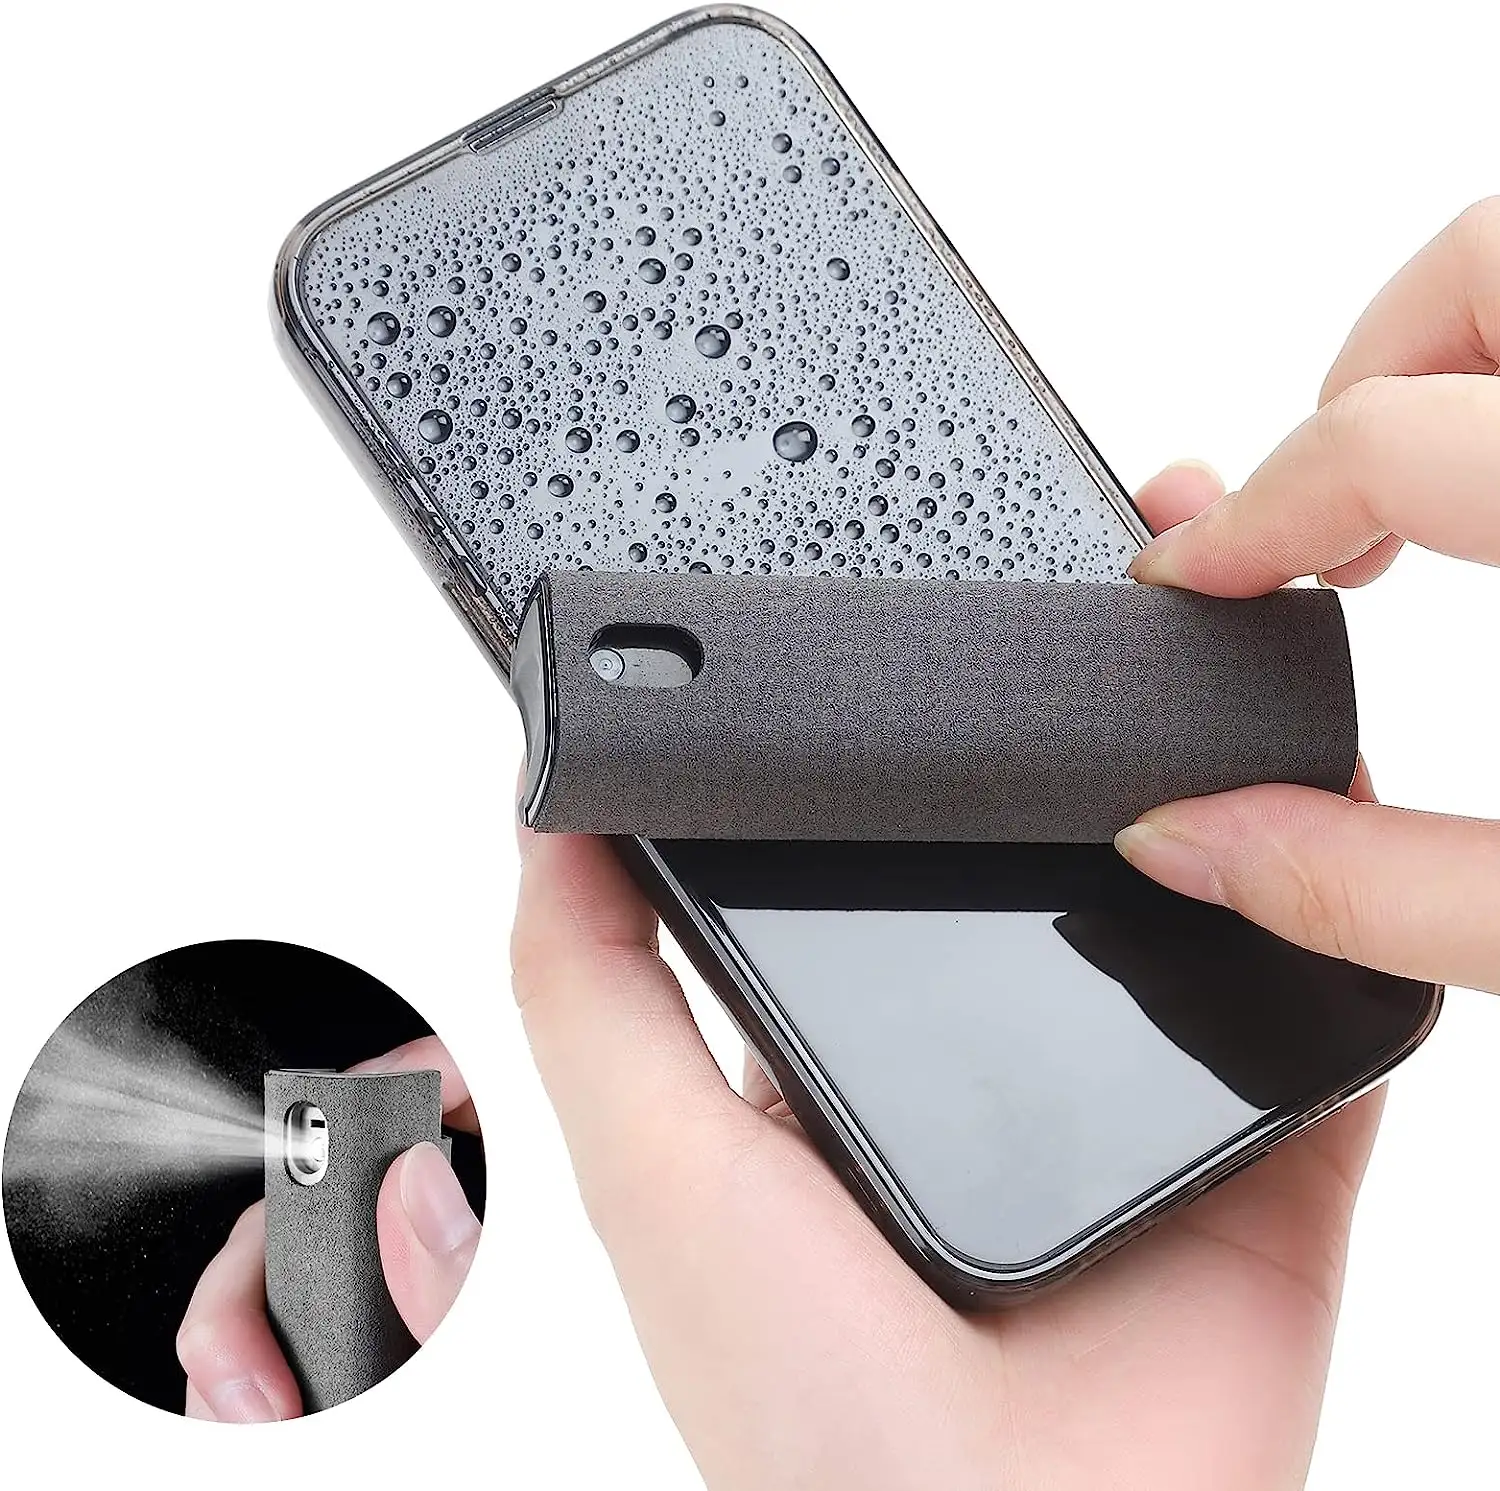 2023 Opula Nieuwste 2 In 1 Telefoon Screen Cleaner Spray Scherm Reinigingsset Microfiber Smartphone Scherm Cleaner Kit